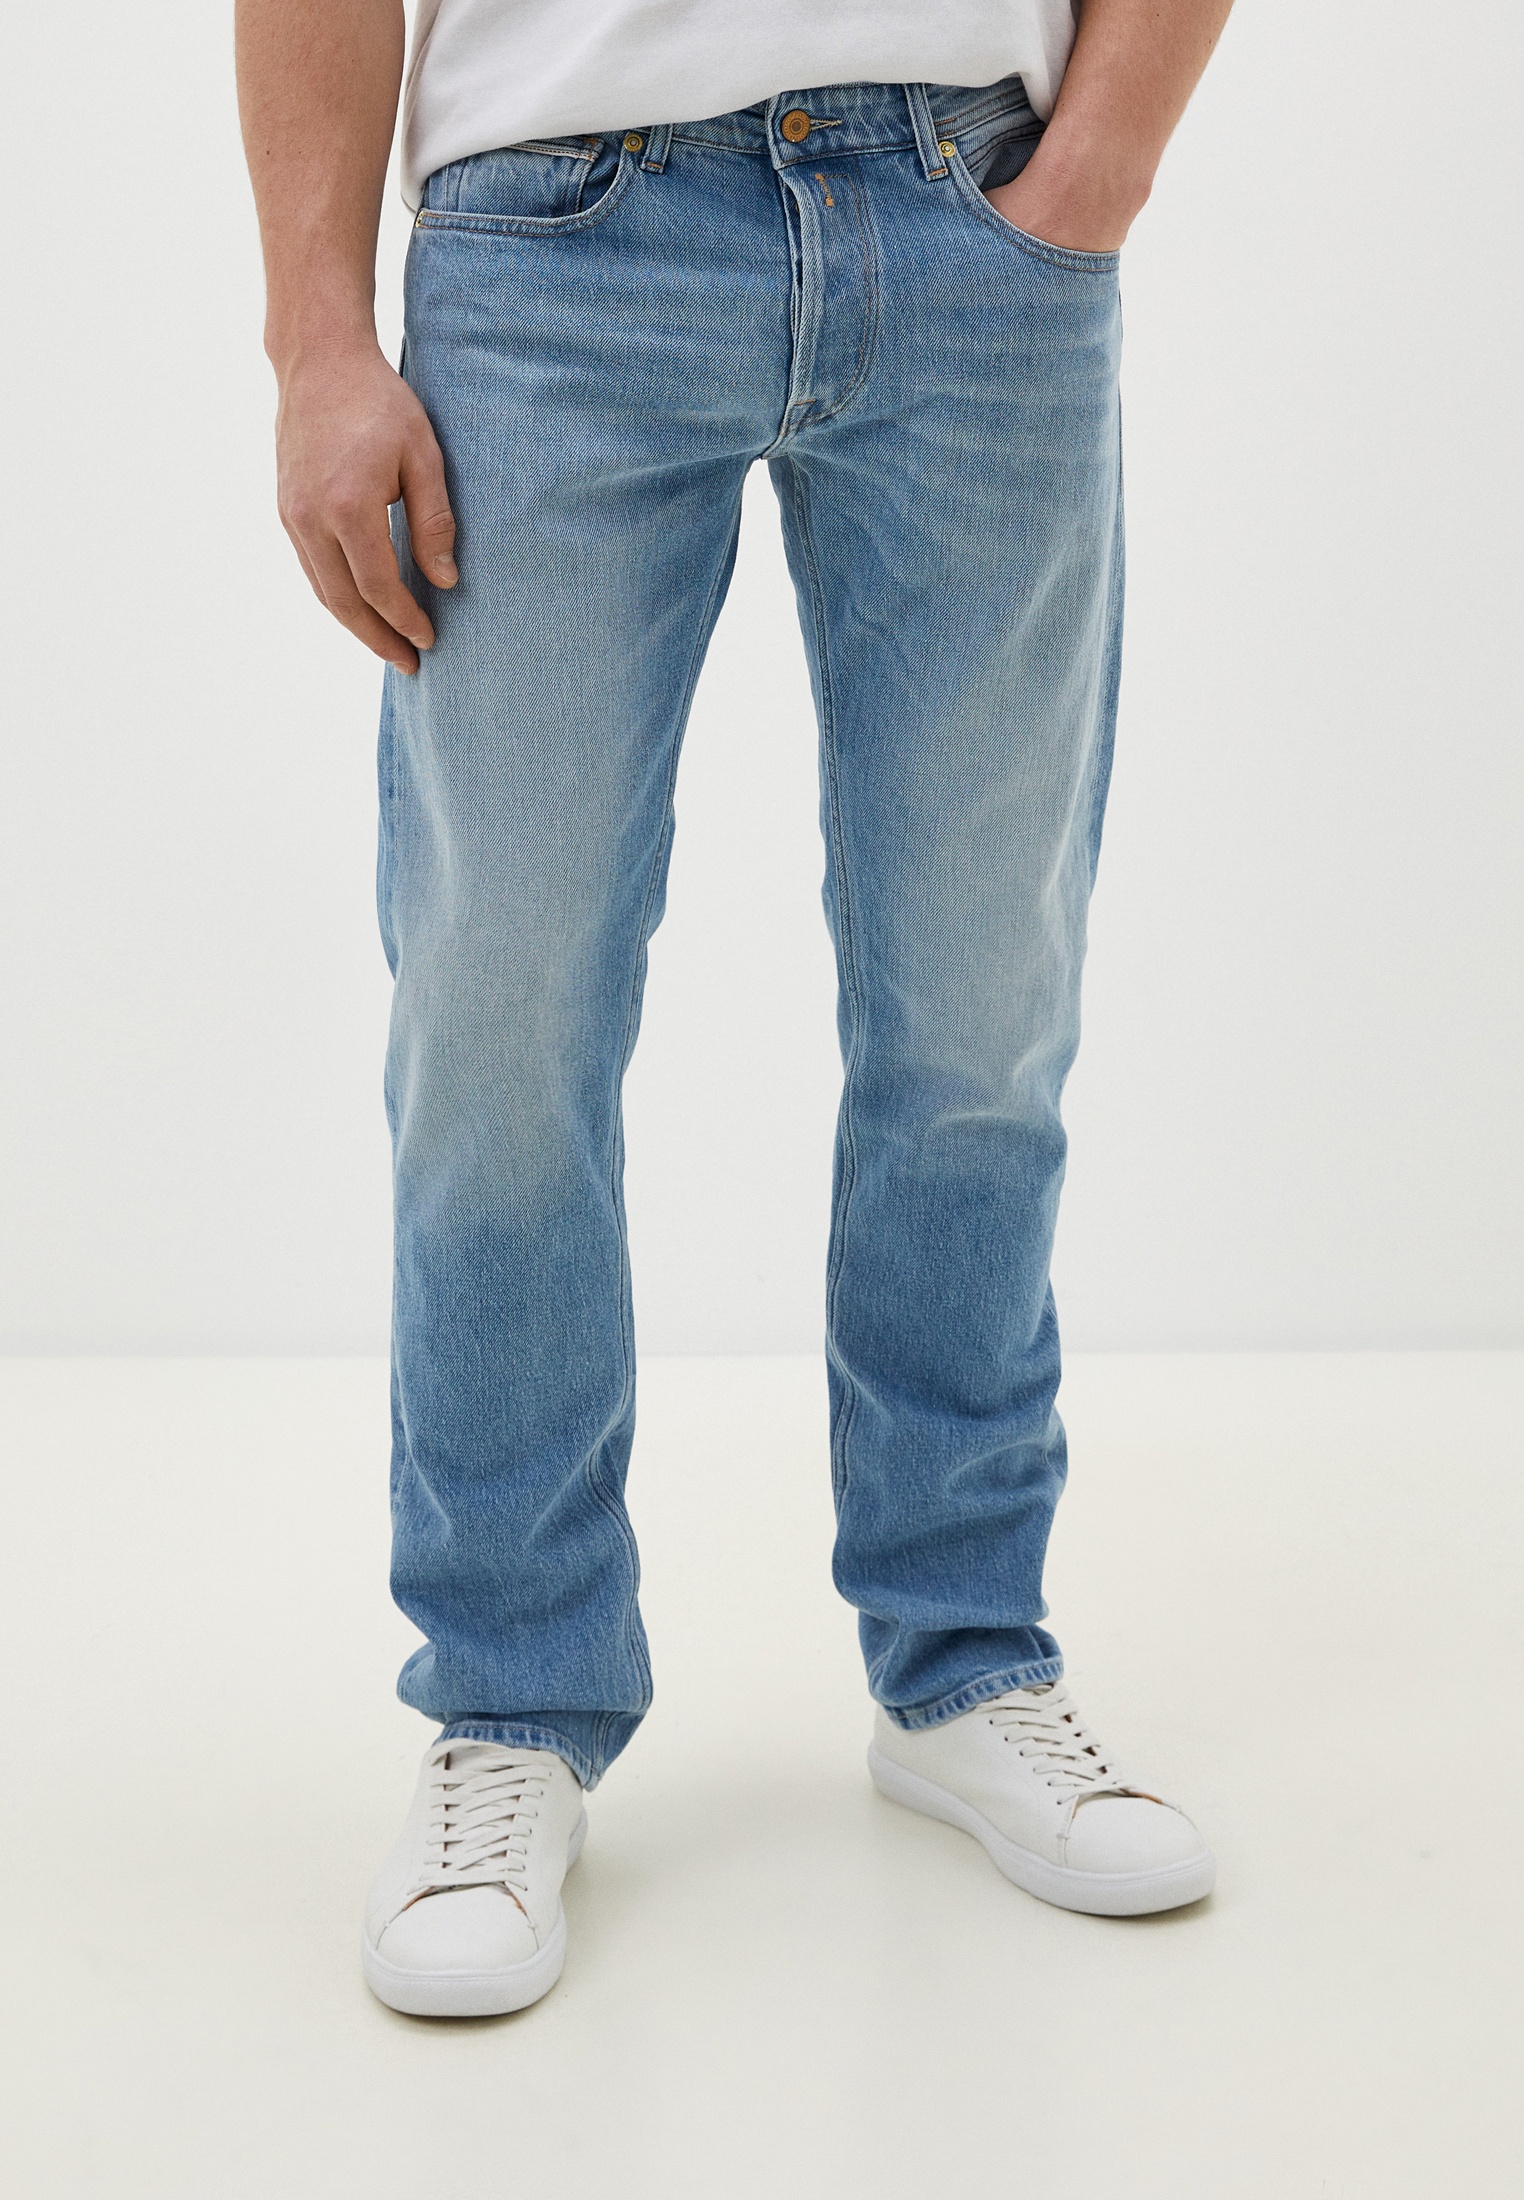 Мужские прямые джинсы Replay (Реплей) MA972P.000.737 606